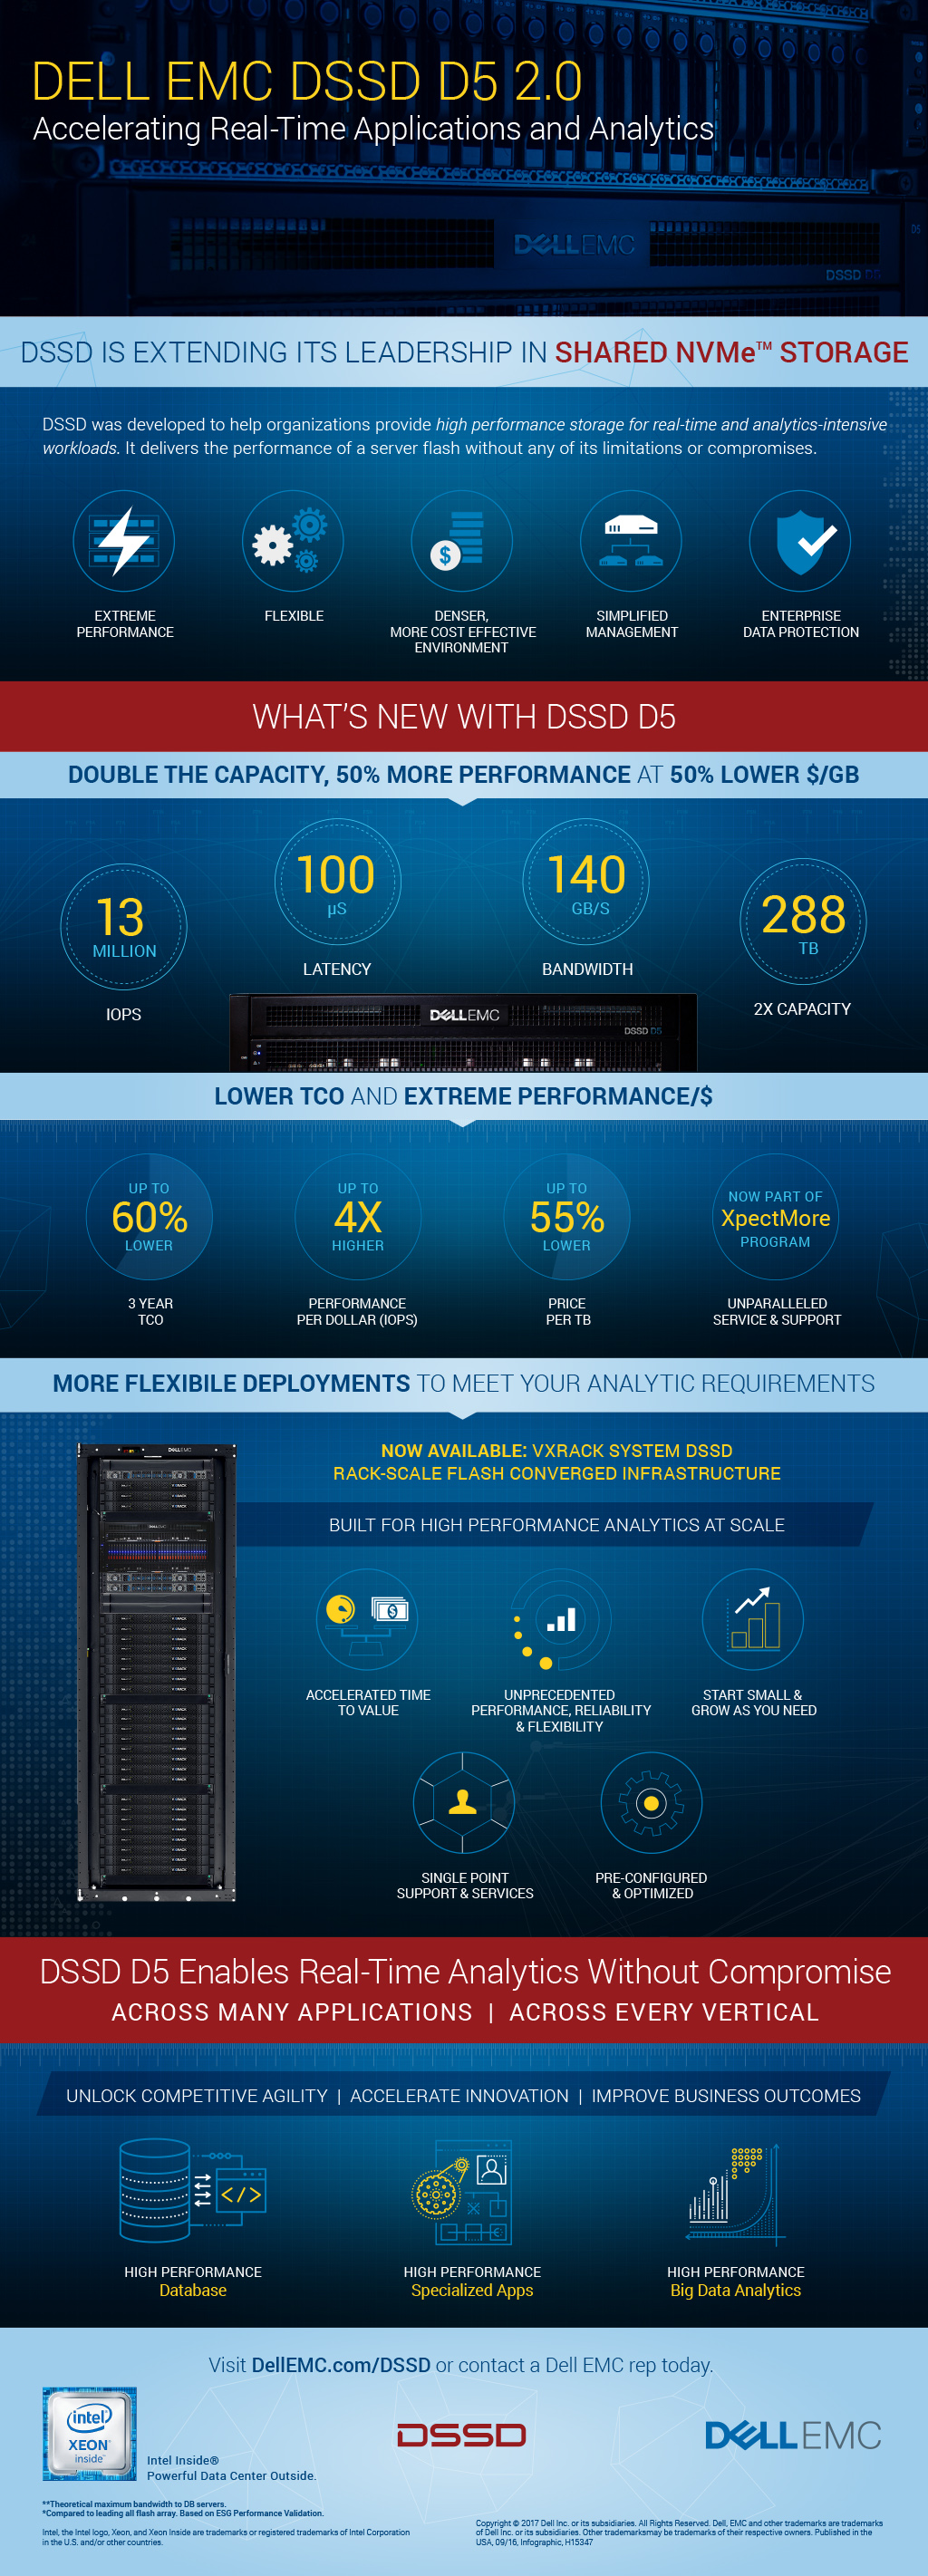 Dell EMC DSSD 2.0 Infographic